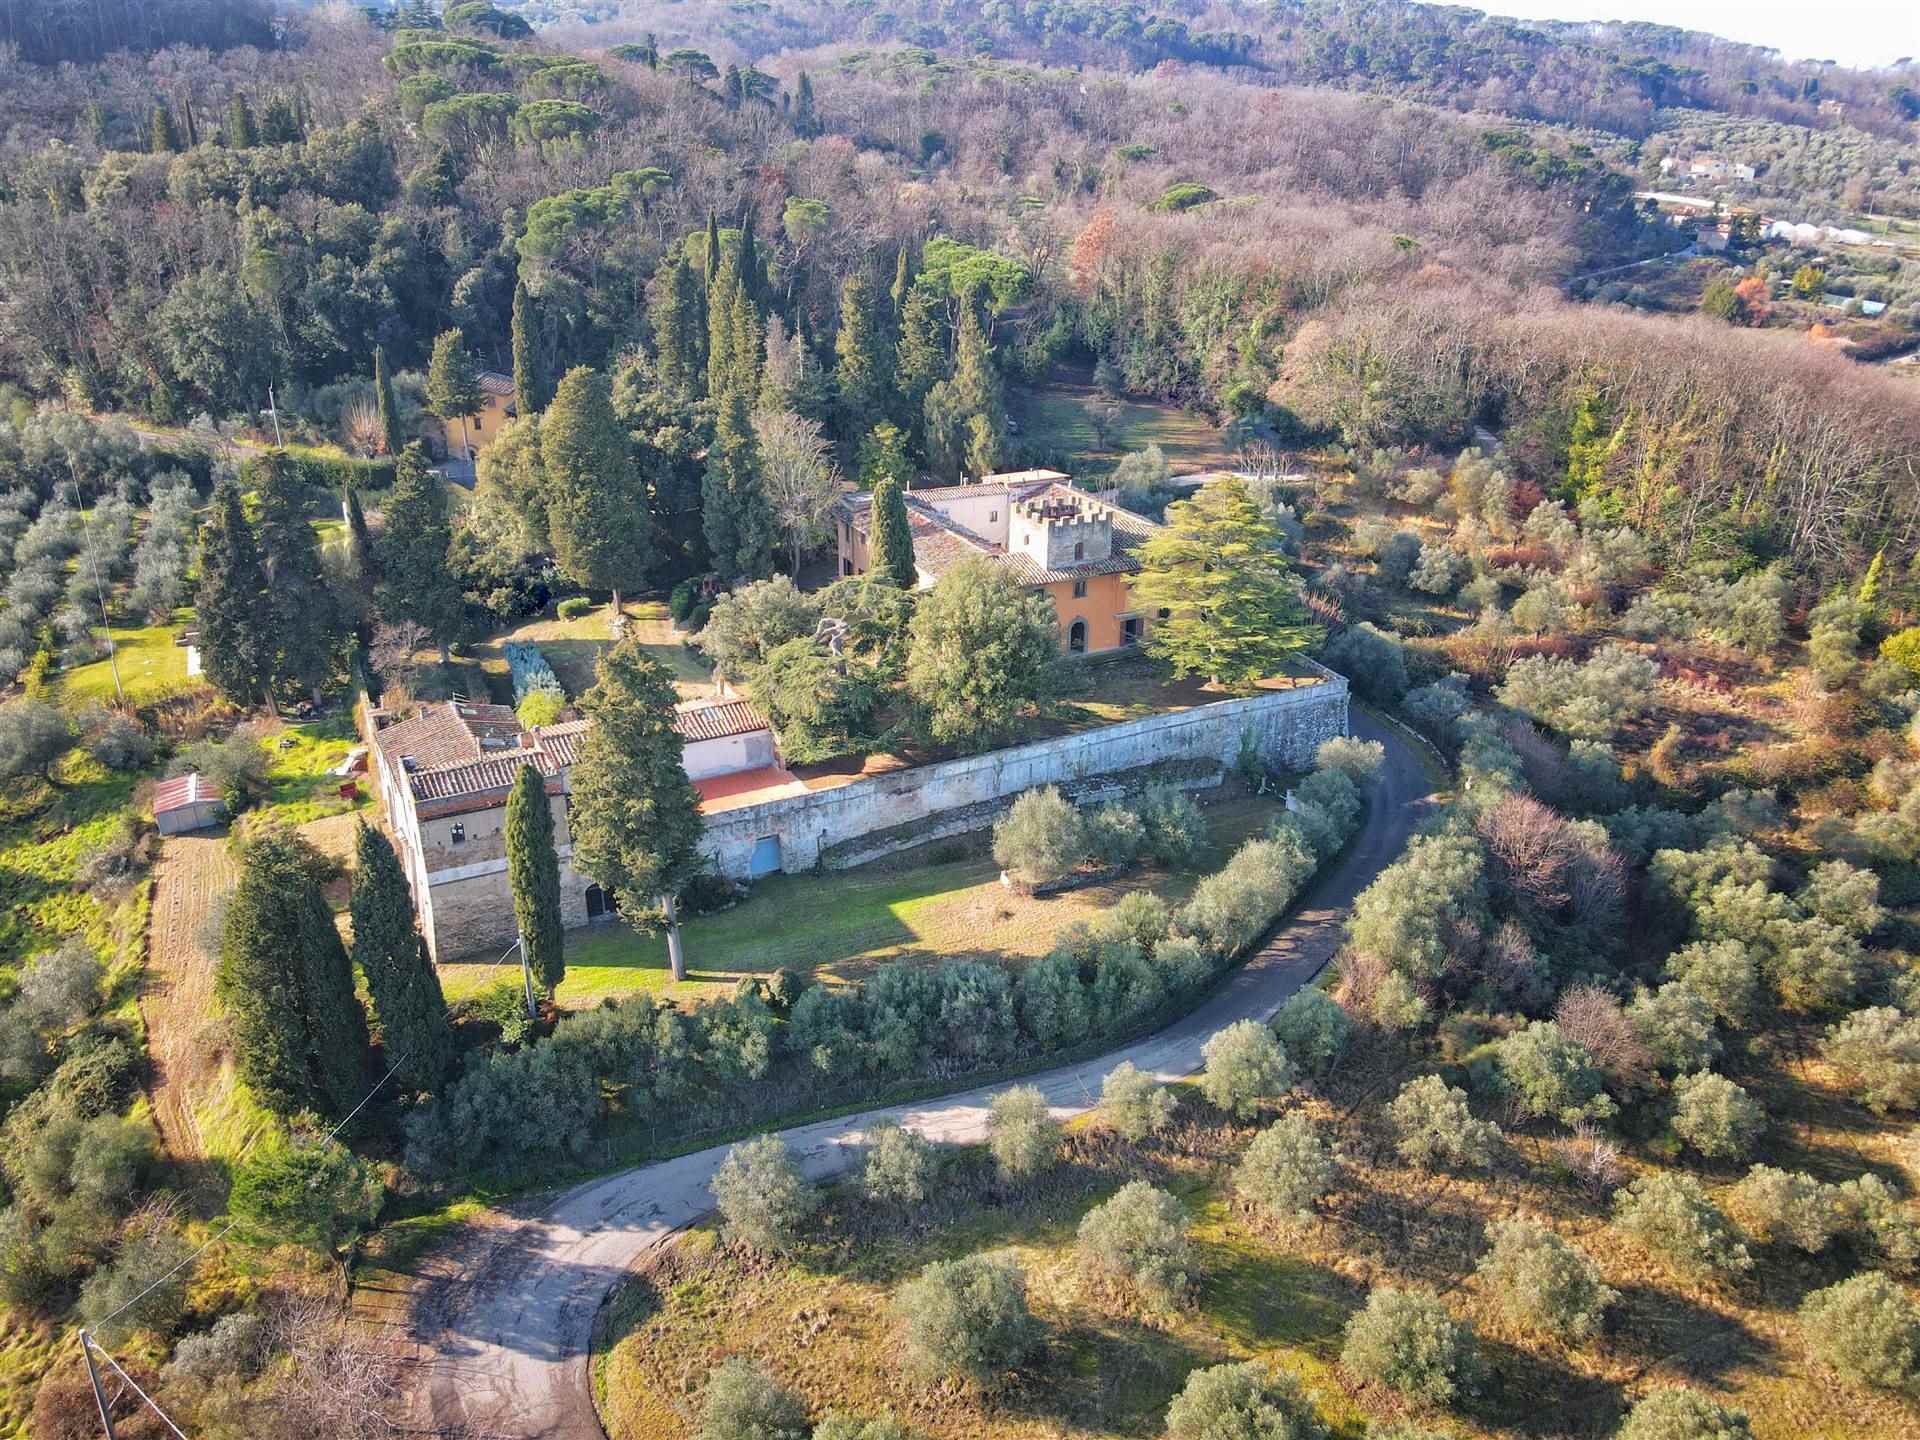 Villa l'Arrigo